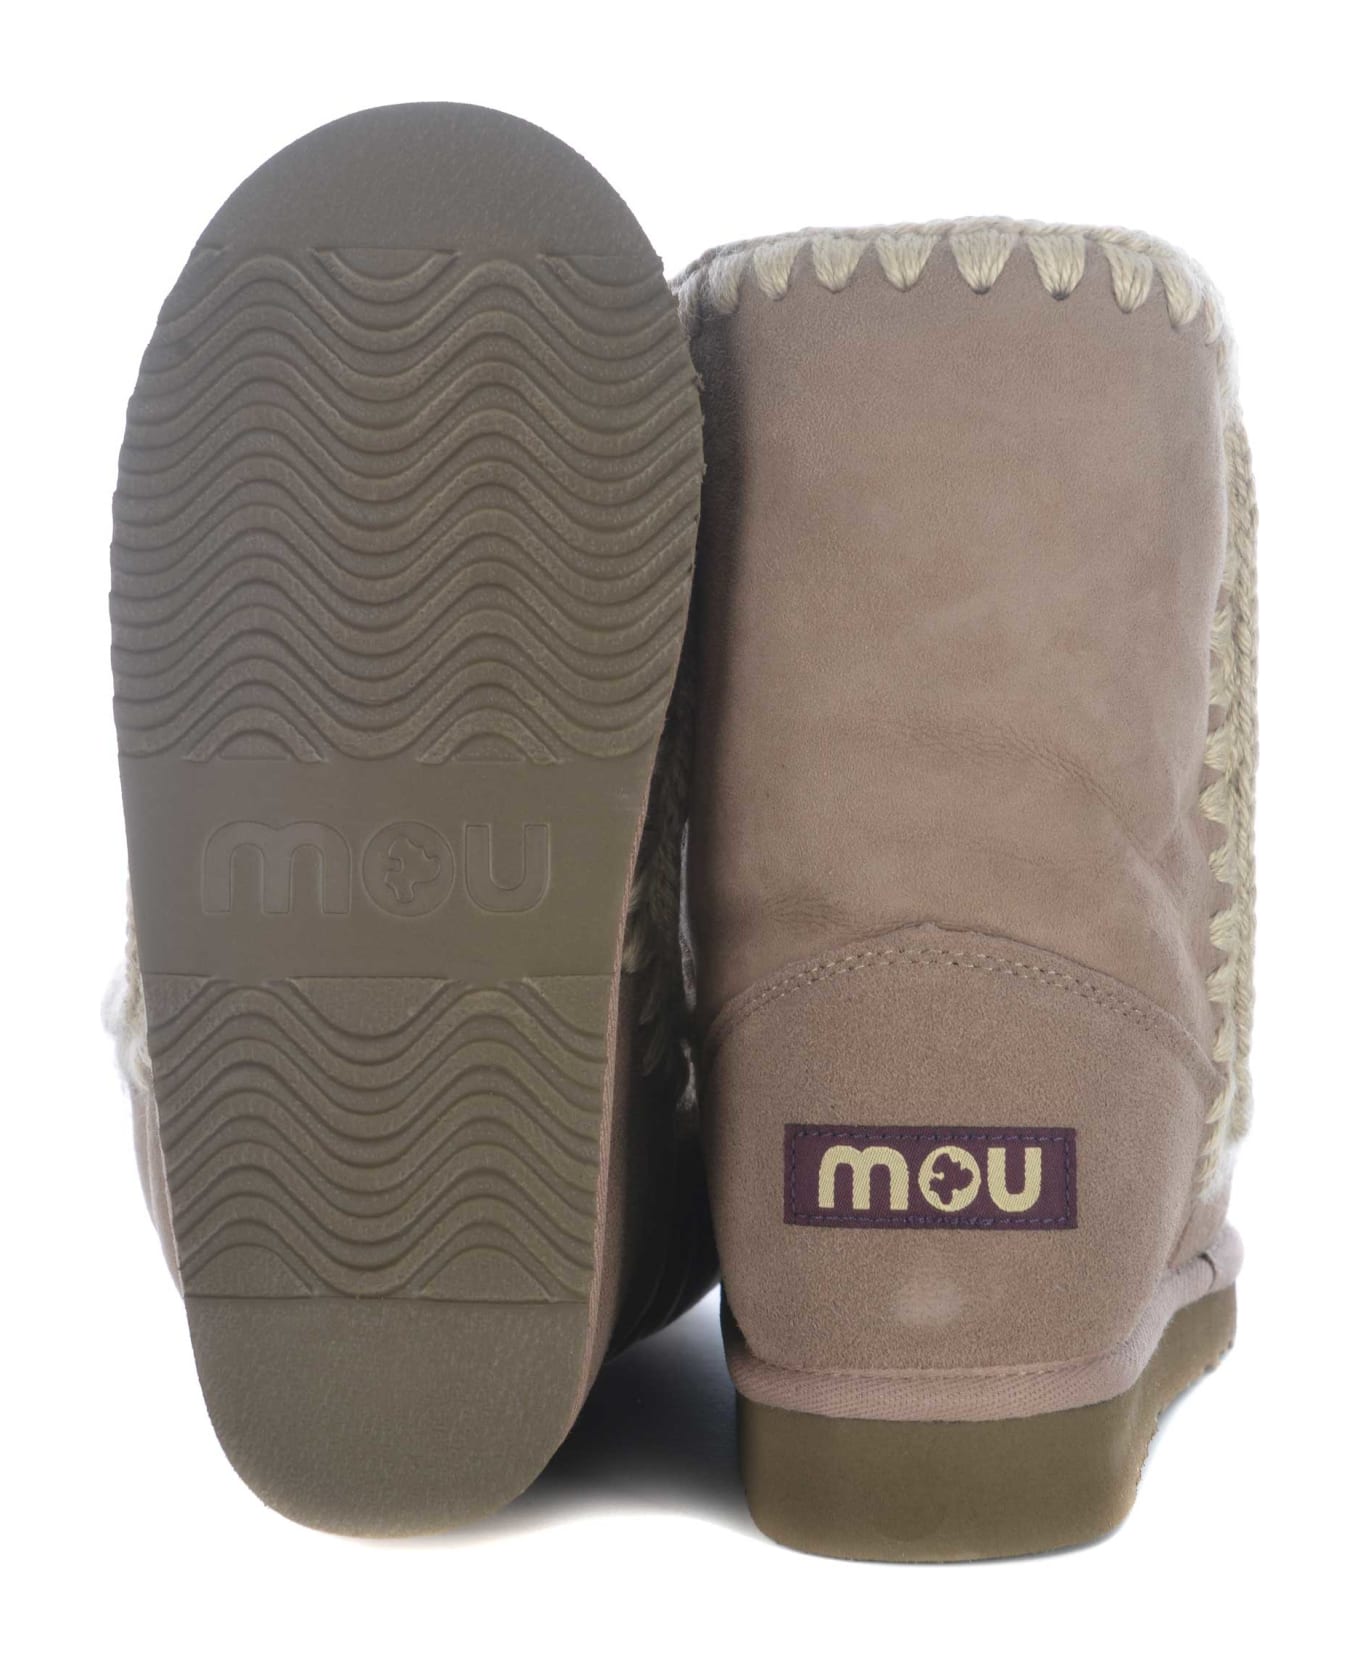 Mou Boots Mou "eskimo24" Made In Suede - Tortora chiaro